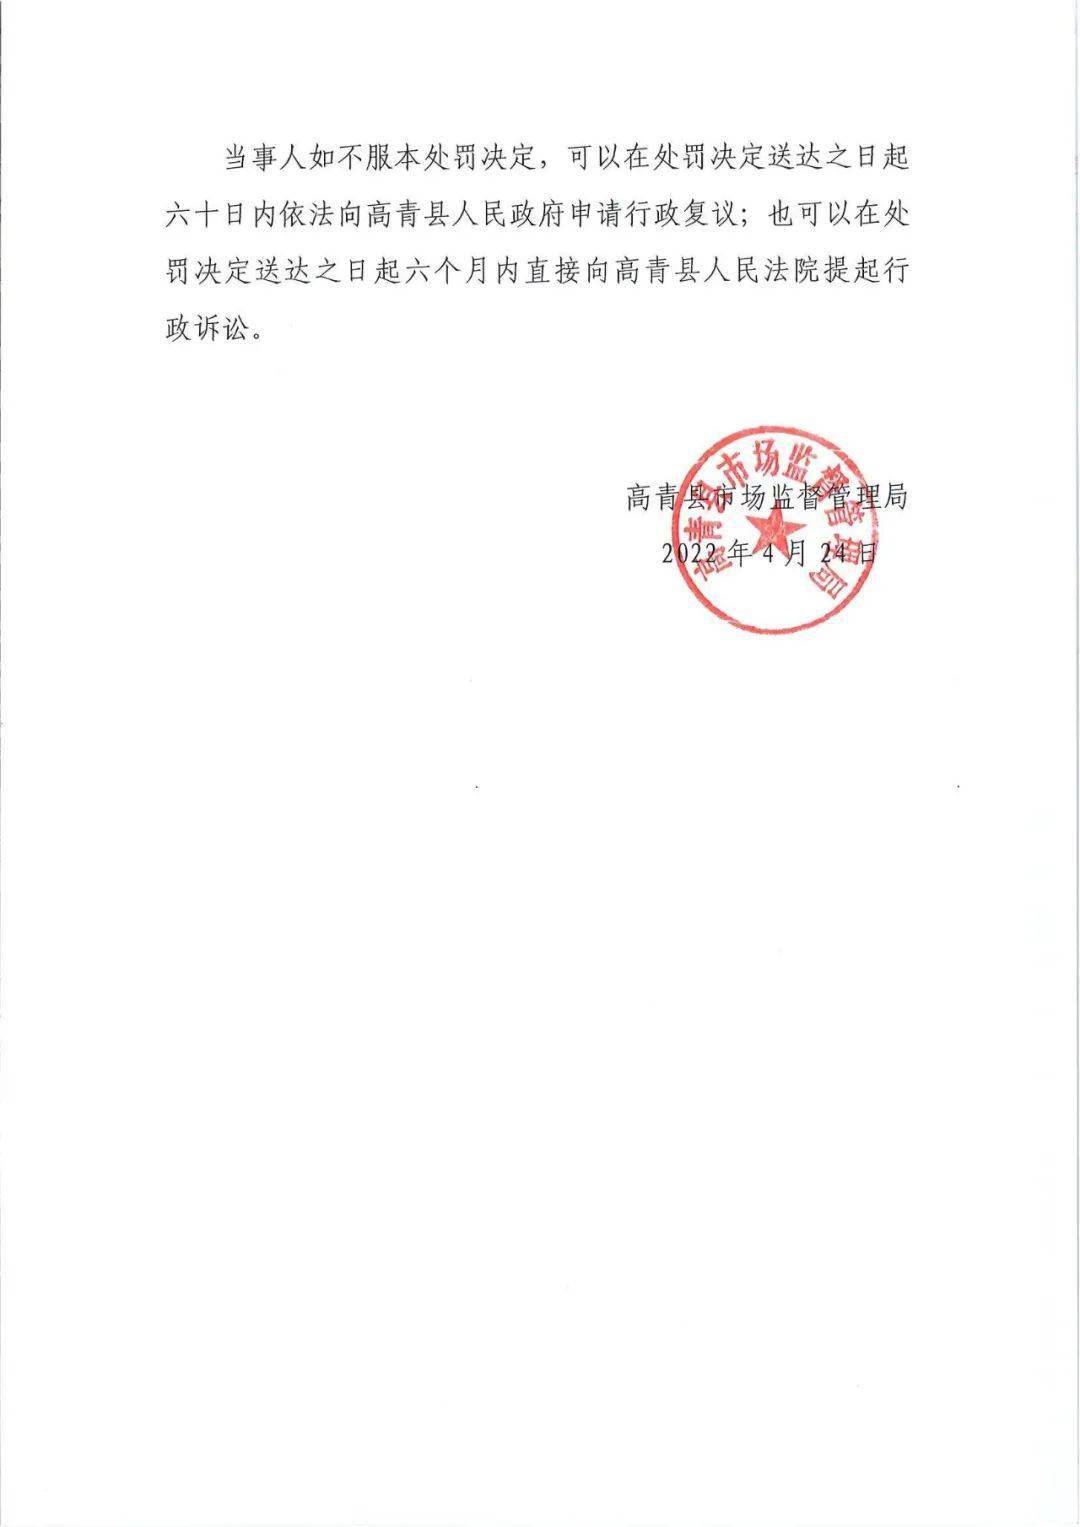 高青县市场监督管理局吊销企业营业执照行政处罚决定书送达公告